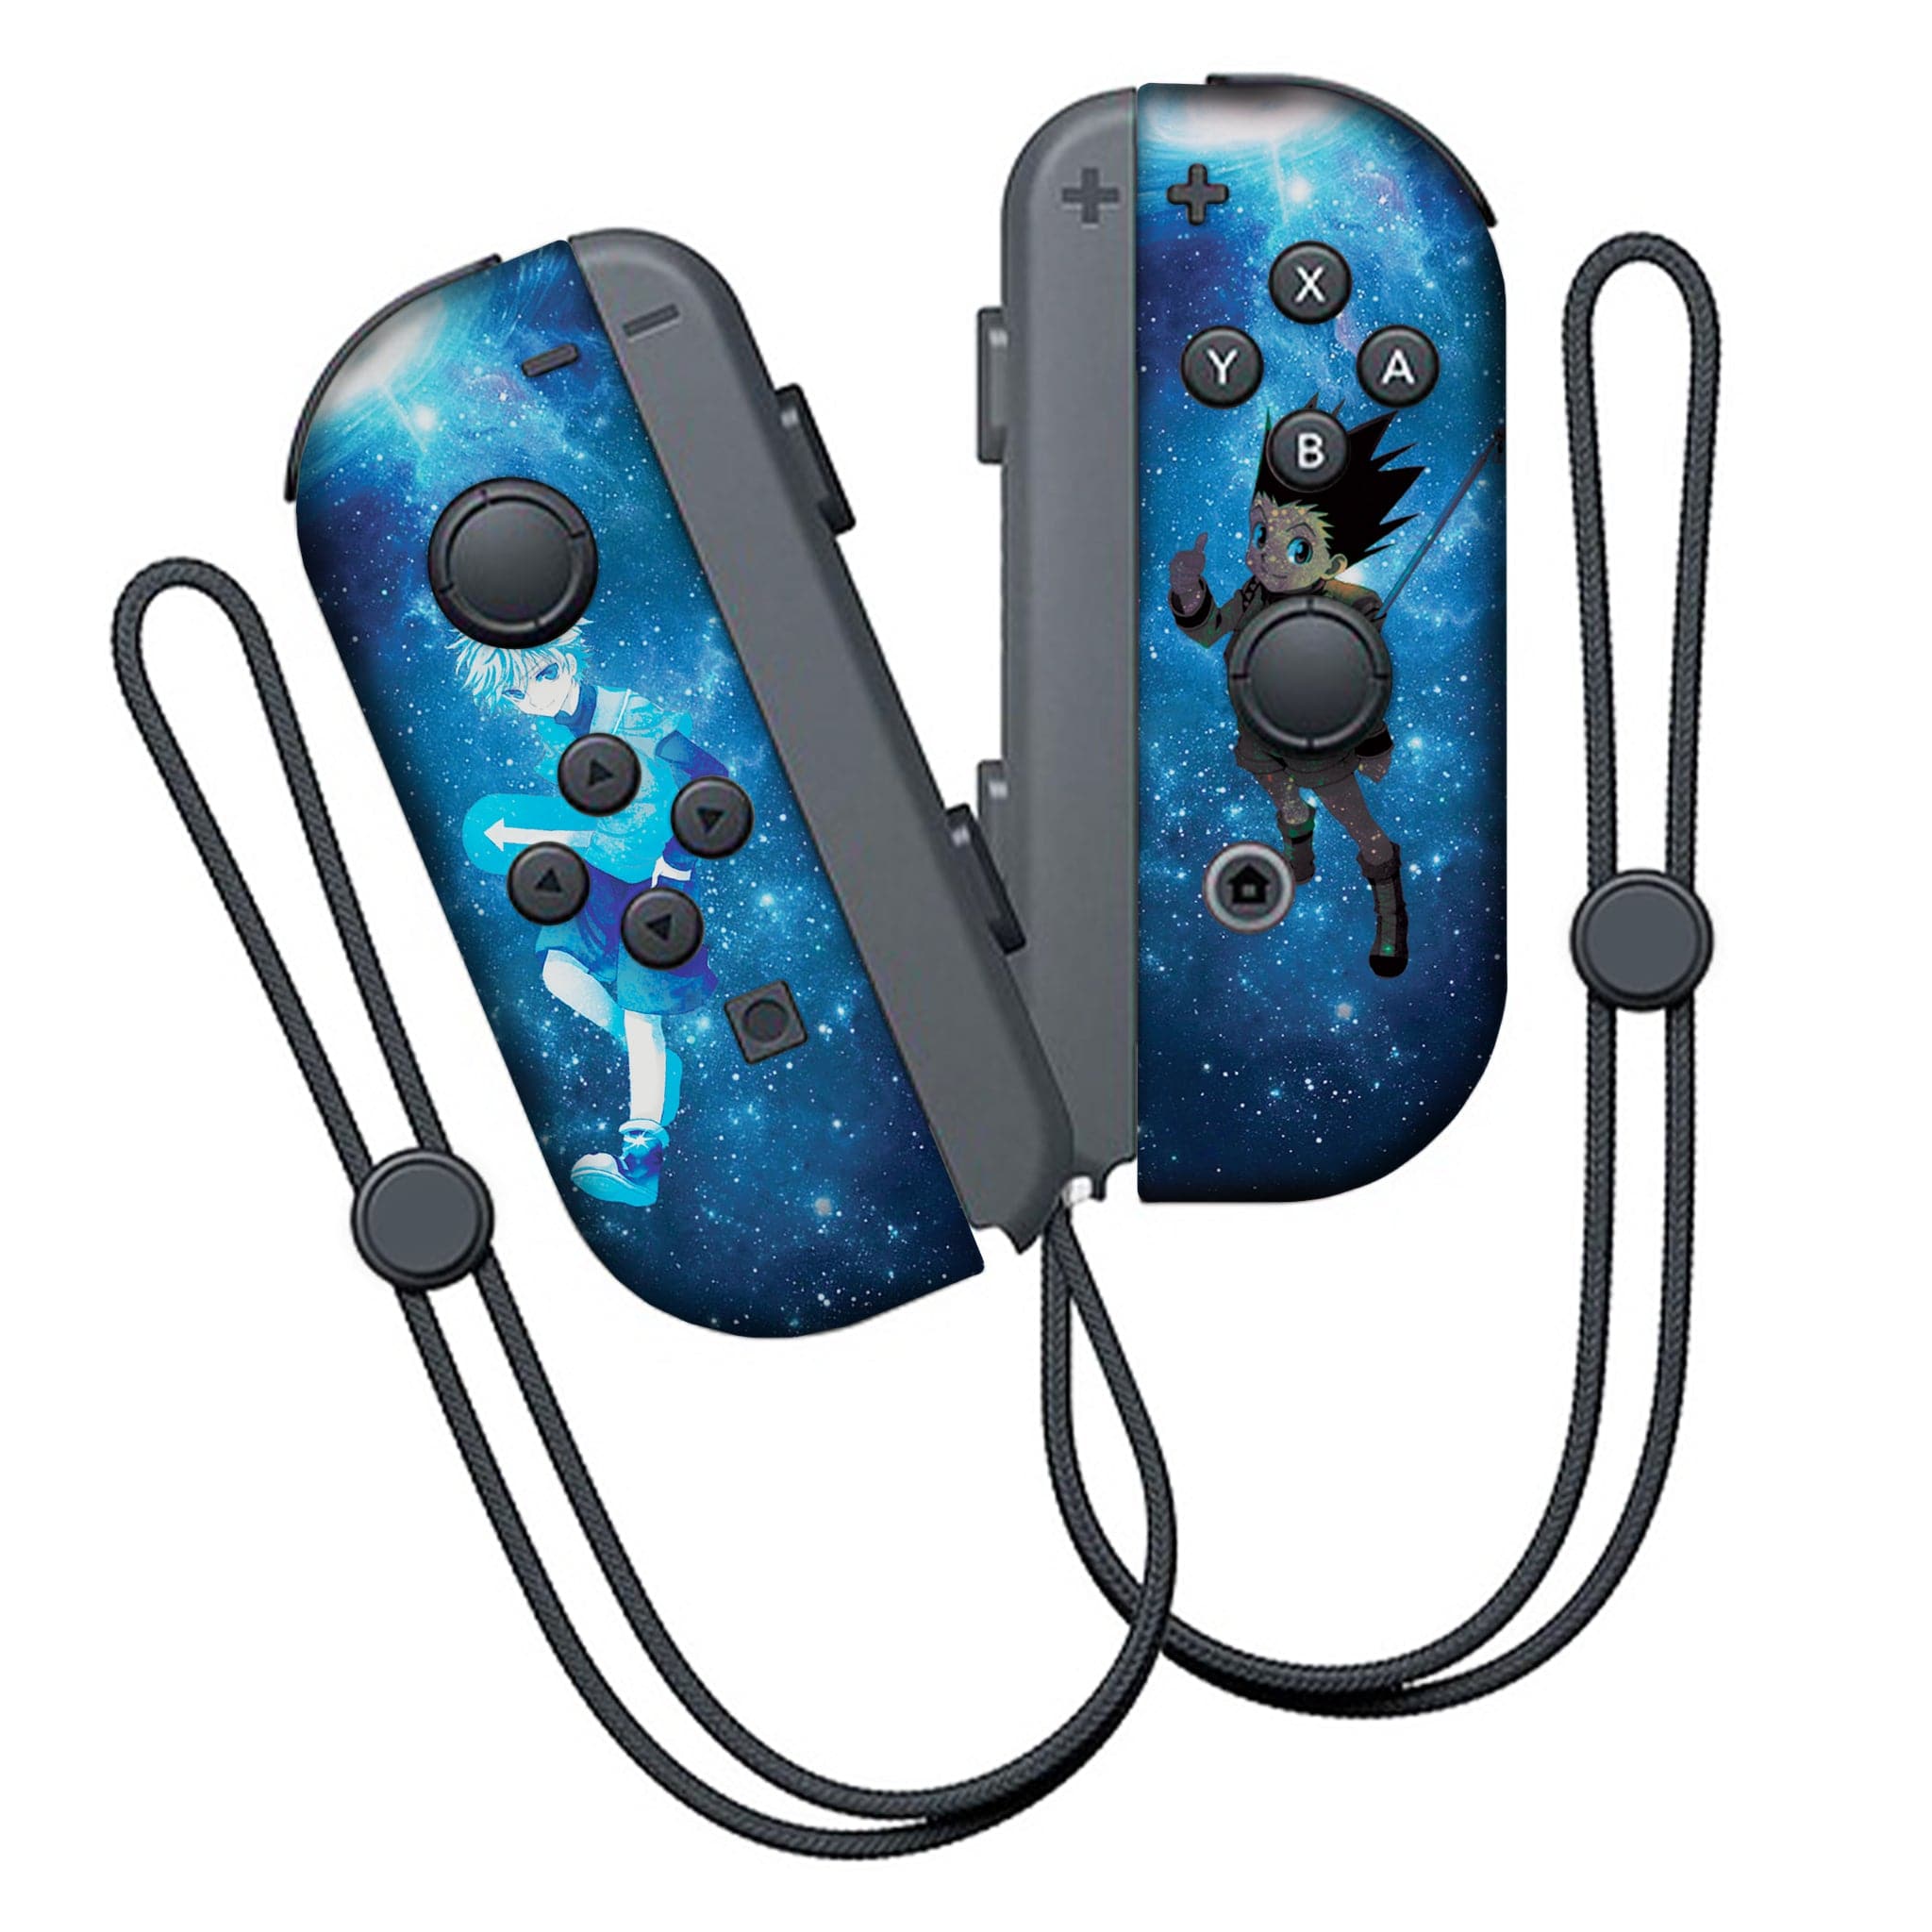 HXH Joy-Con (L/R) Controllers | Nintendo Switch Pro Console